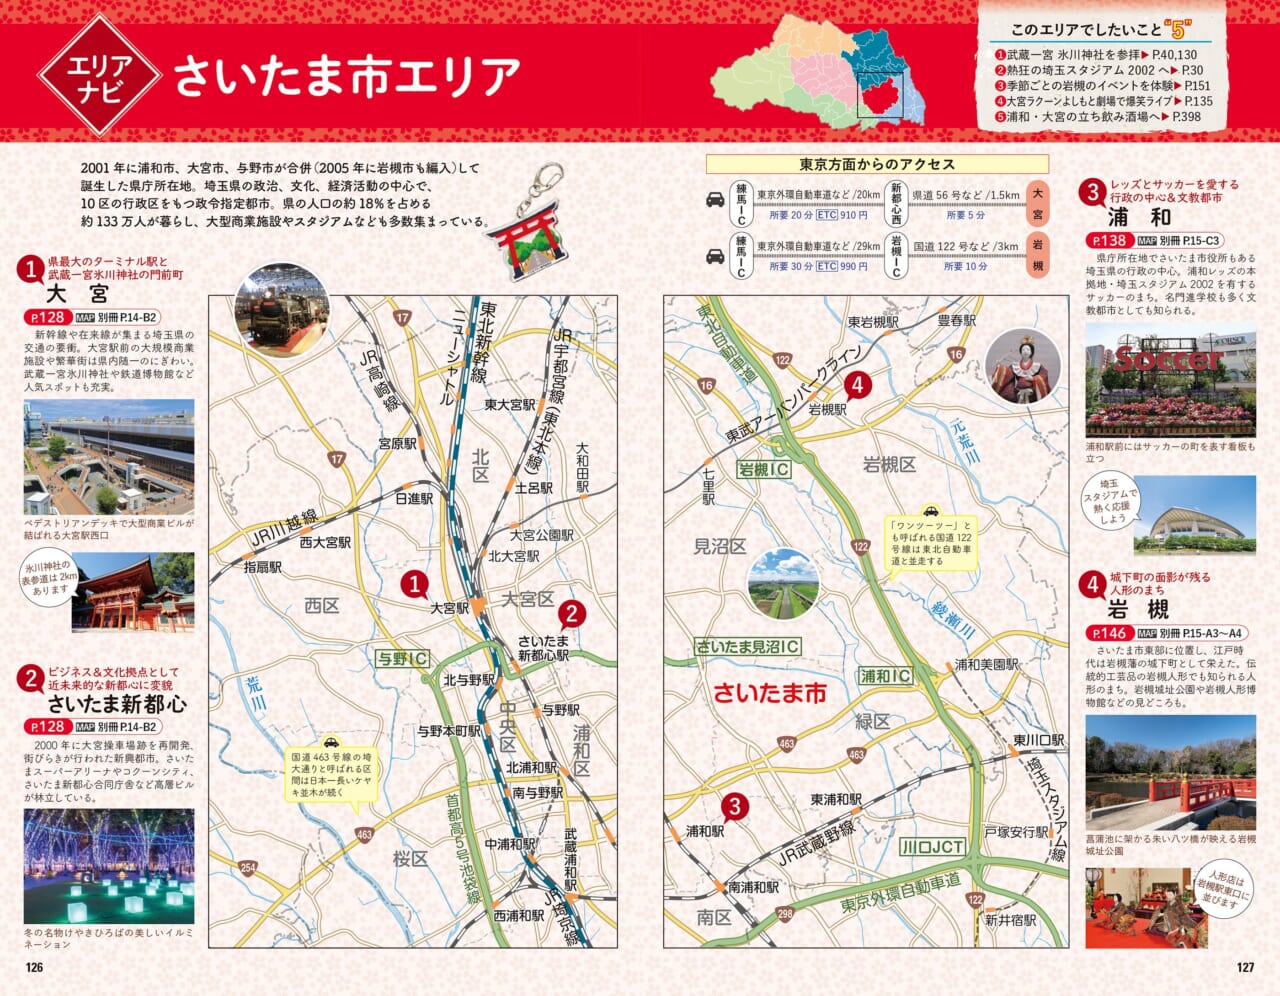 埼玉県を7エリアに分けて、押さえておきたい概要を解説するエリアナビ